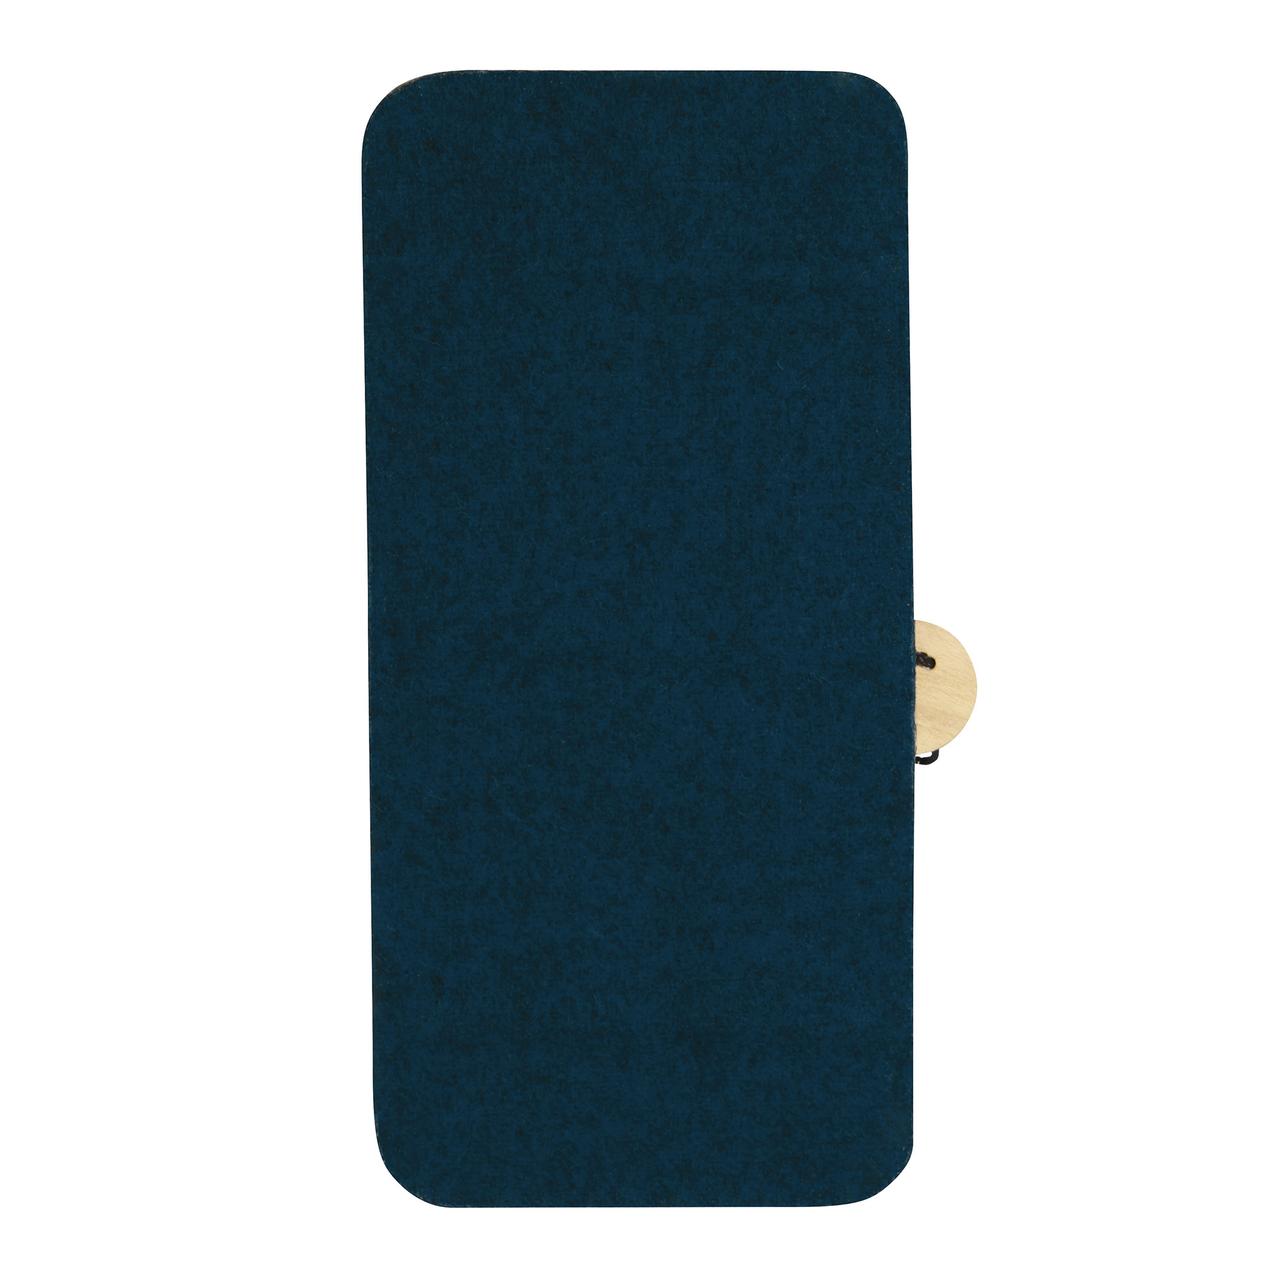 Vorderansicht Labil Stabil klappbare Hülle für das faire Smartphone FP 4, dunkles Blau, handgemacht